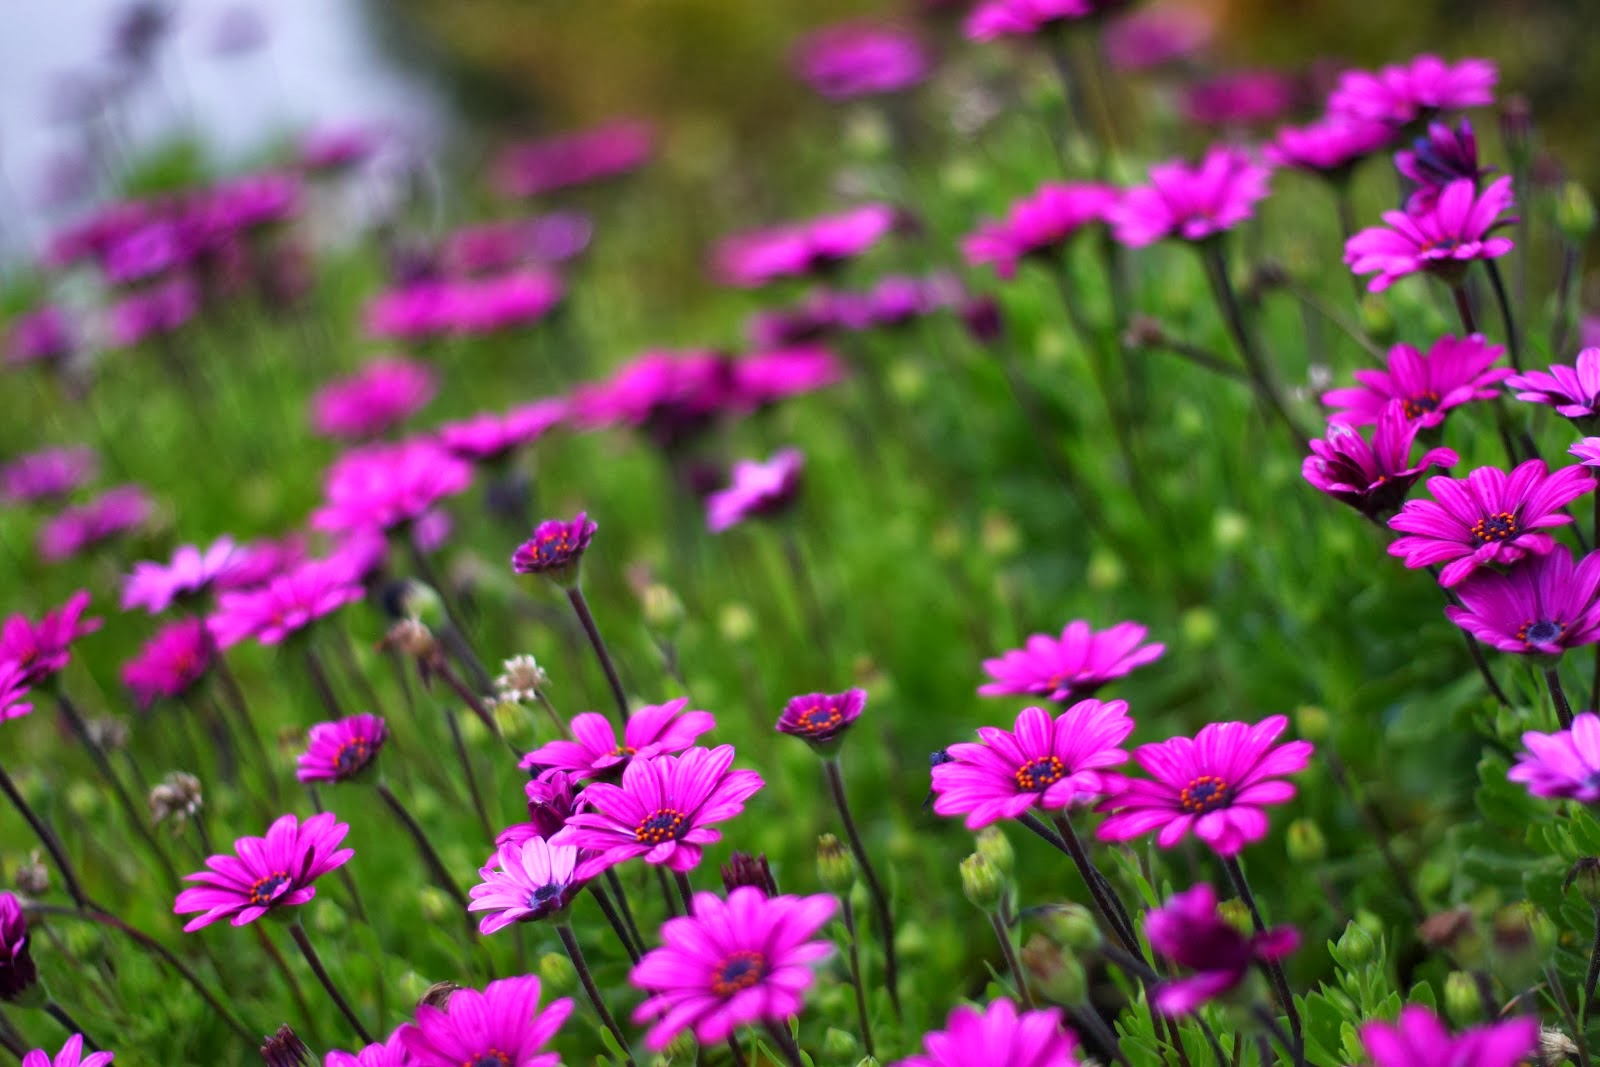 Hoa nở: Hãy chiêm ngưỡng hình ảnh thật đẹp của những đóa hoa nở rộ trong vườn cổ tích này. Bạn sẽ cảm nhận được sự tươi vui và hạnh phúc khi ngắm nhìn những bông hoa tuyệt đẹp này.